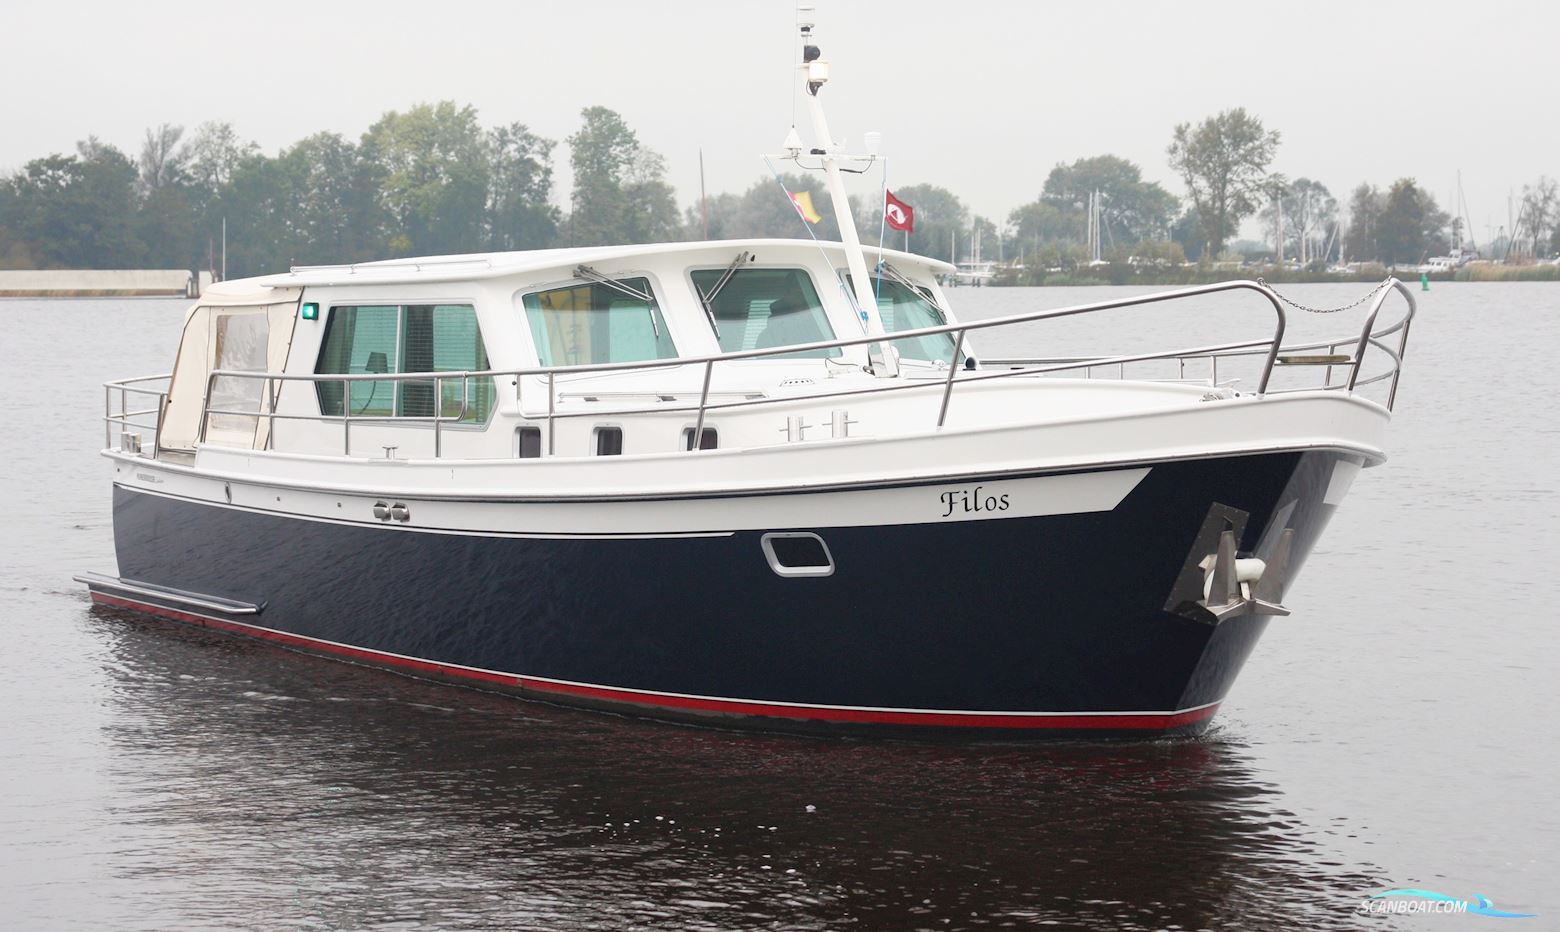 Pikmeerkruiser 12.50 OK "Exclusive" Motorbåt 2004, med Vetus-Deutz motor, Holland